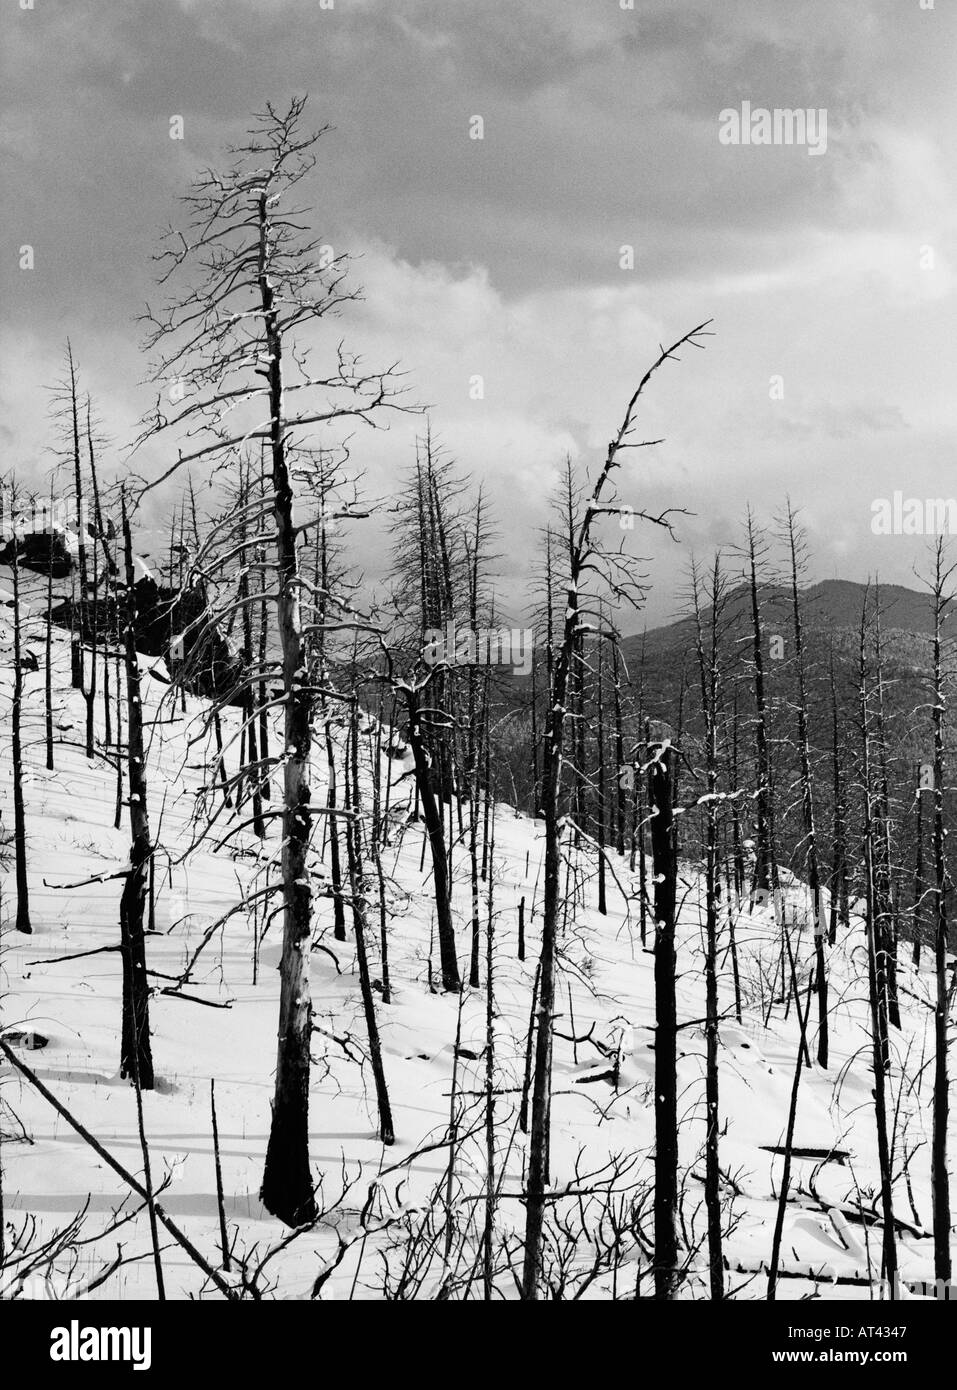 Verbrannte Bäume In den Schnee Colorado USA 1996 Stockfoto